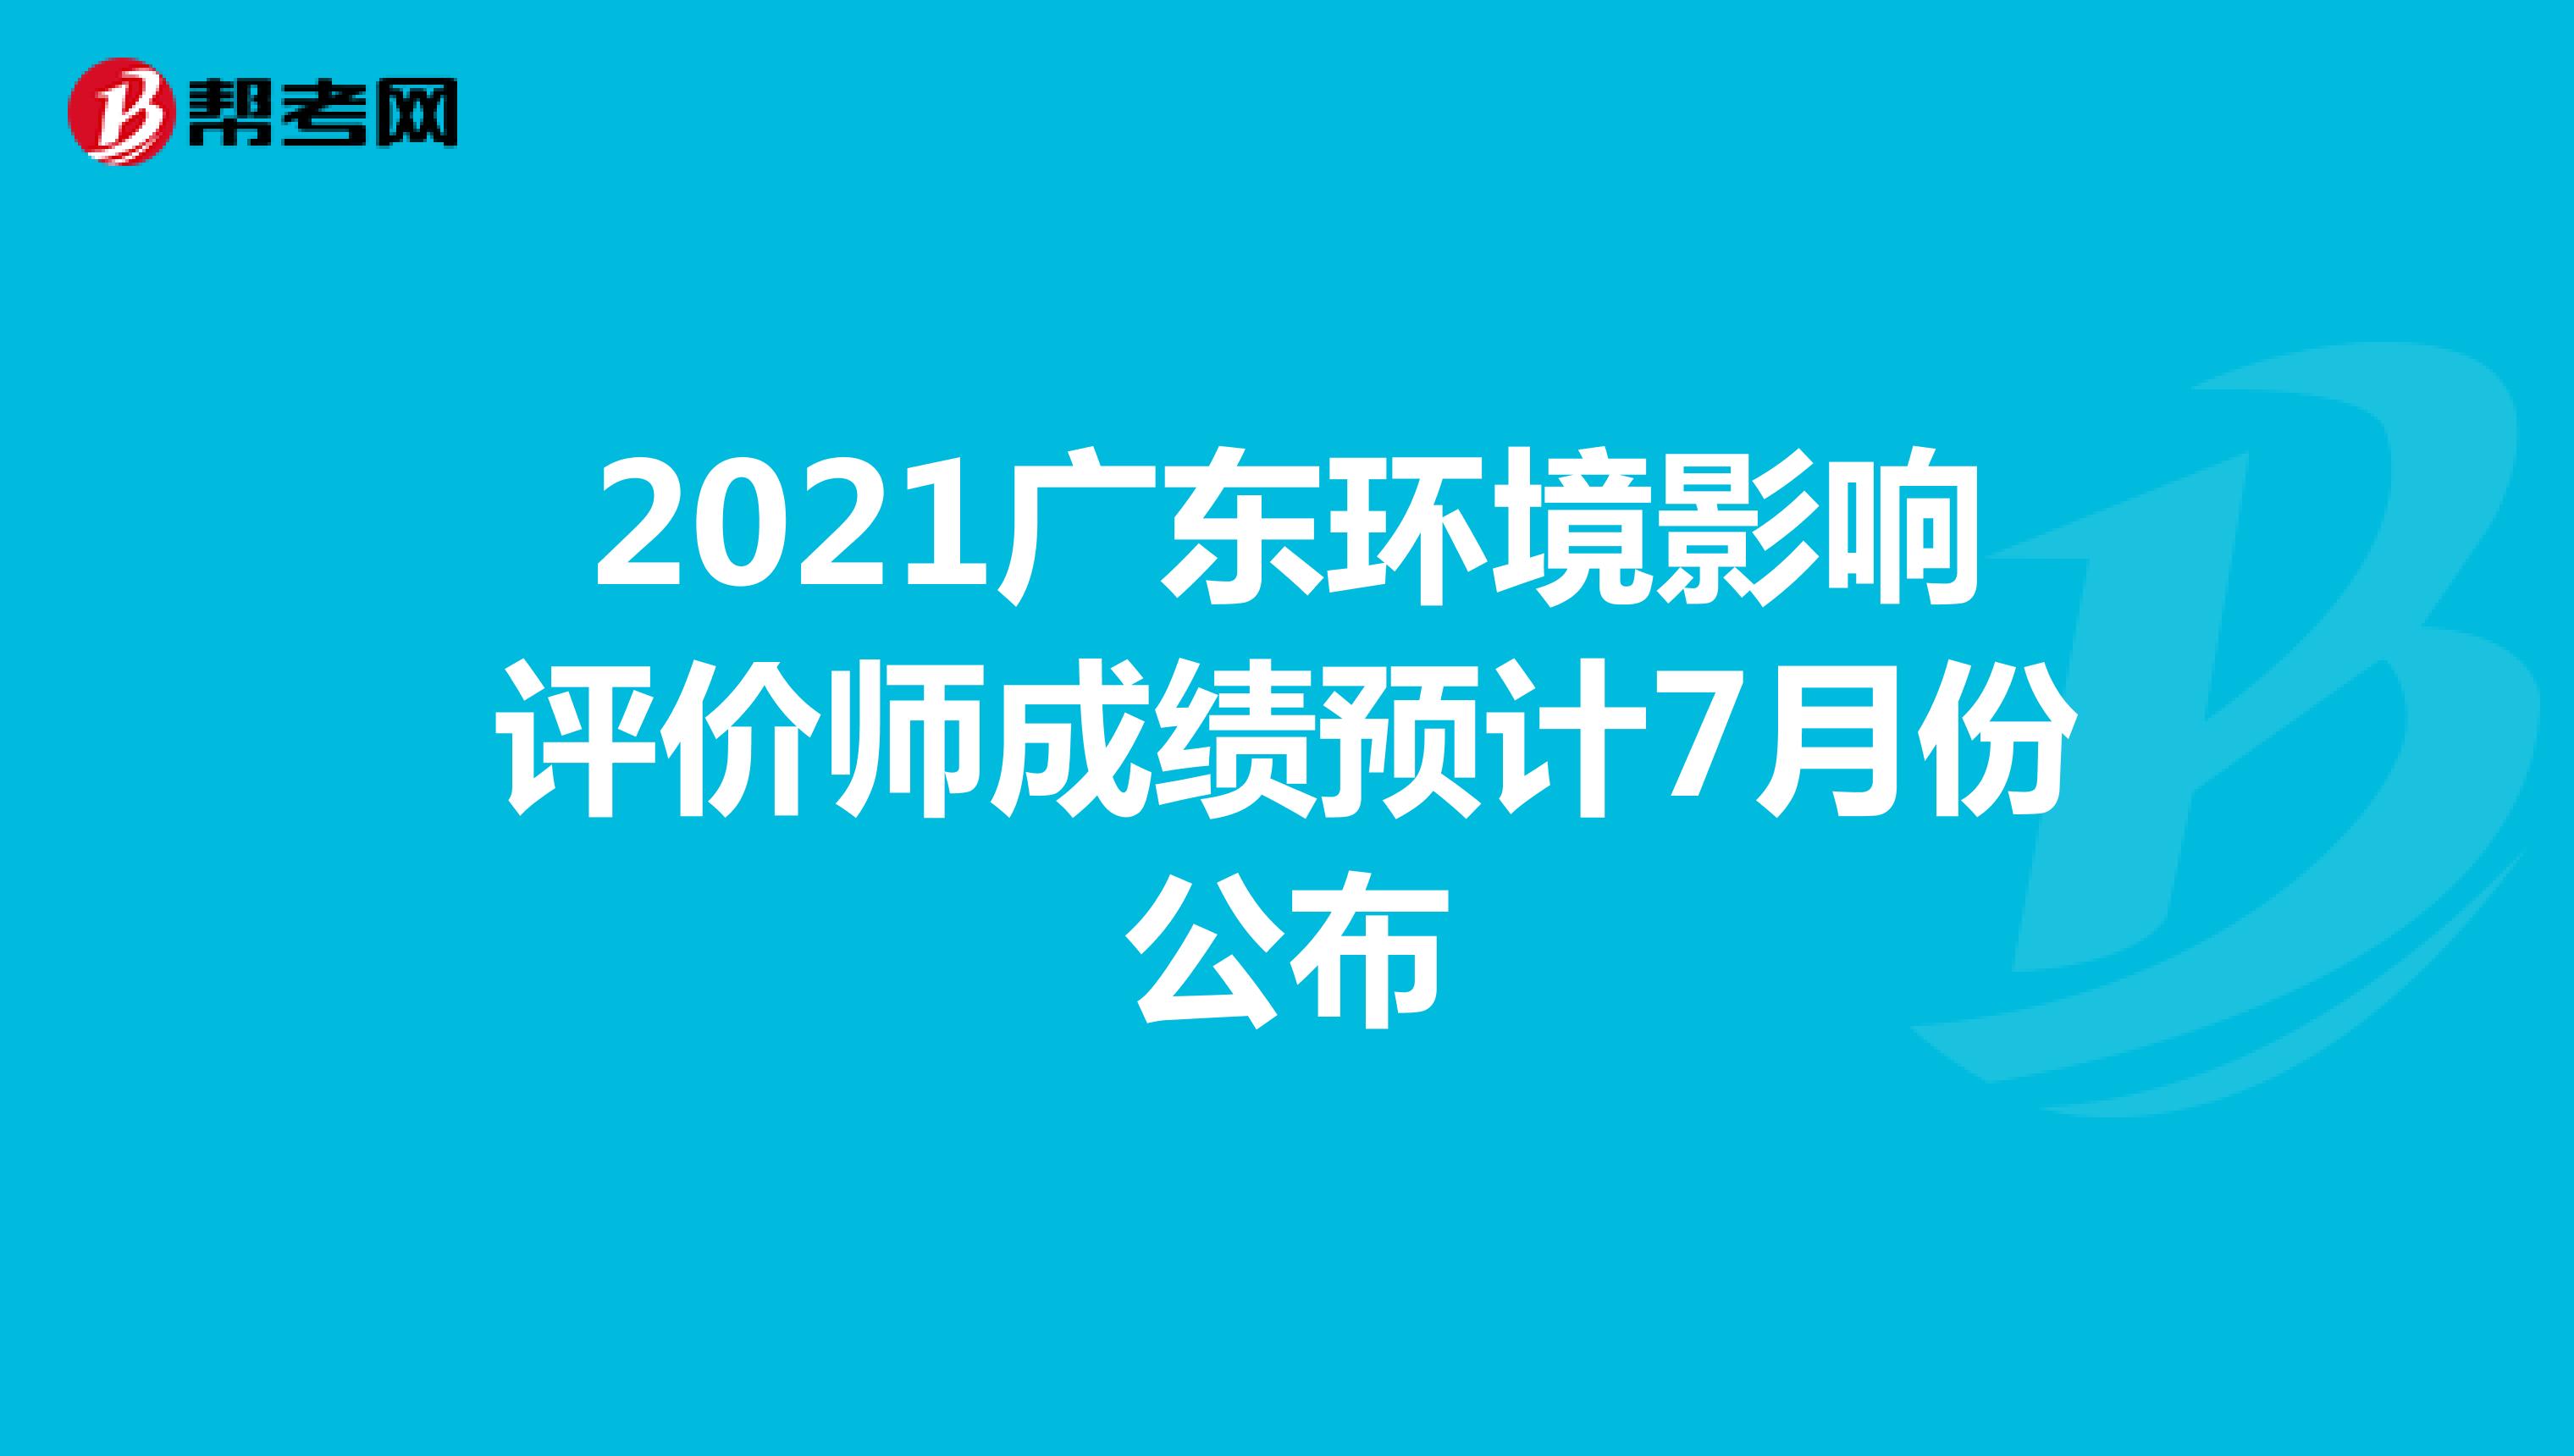 2021广东环境影响评价师成绩预计7月份公布